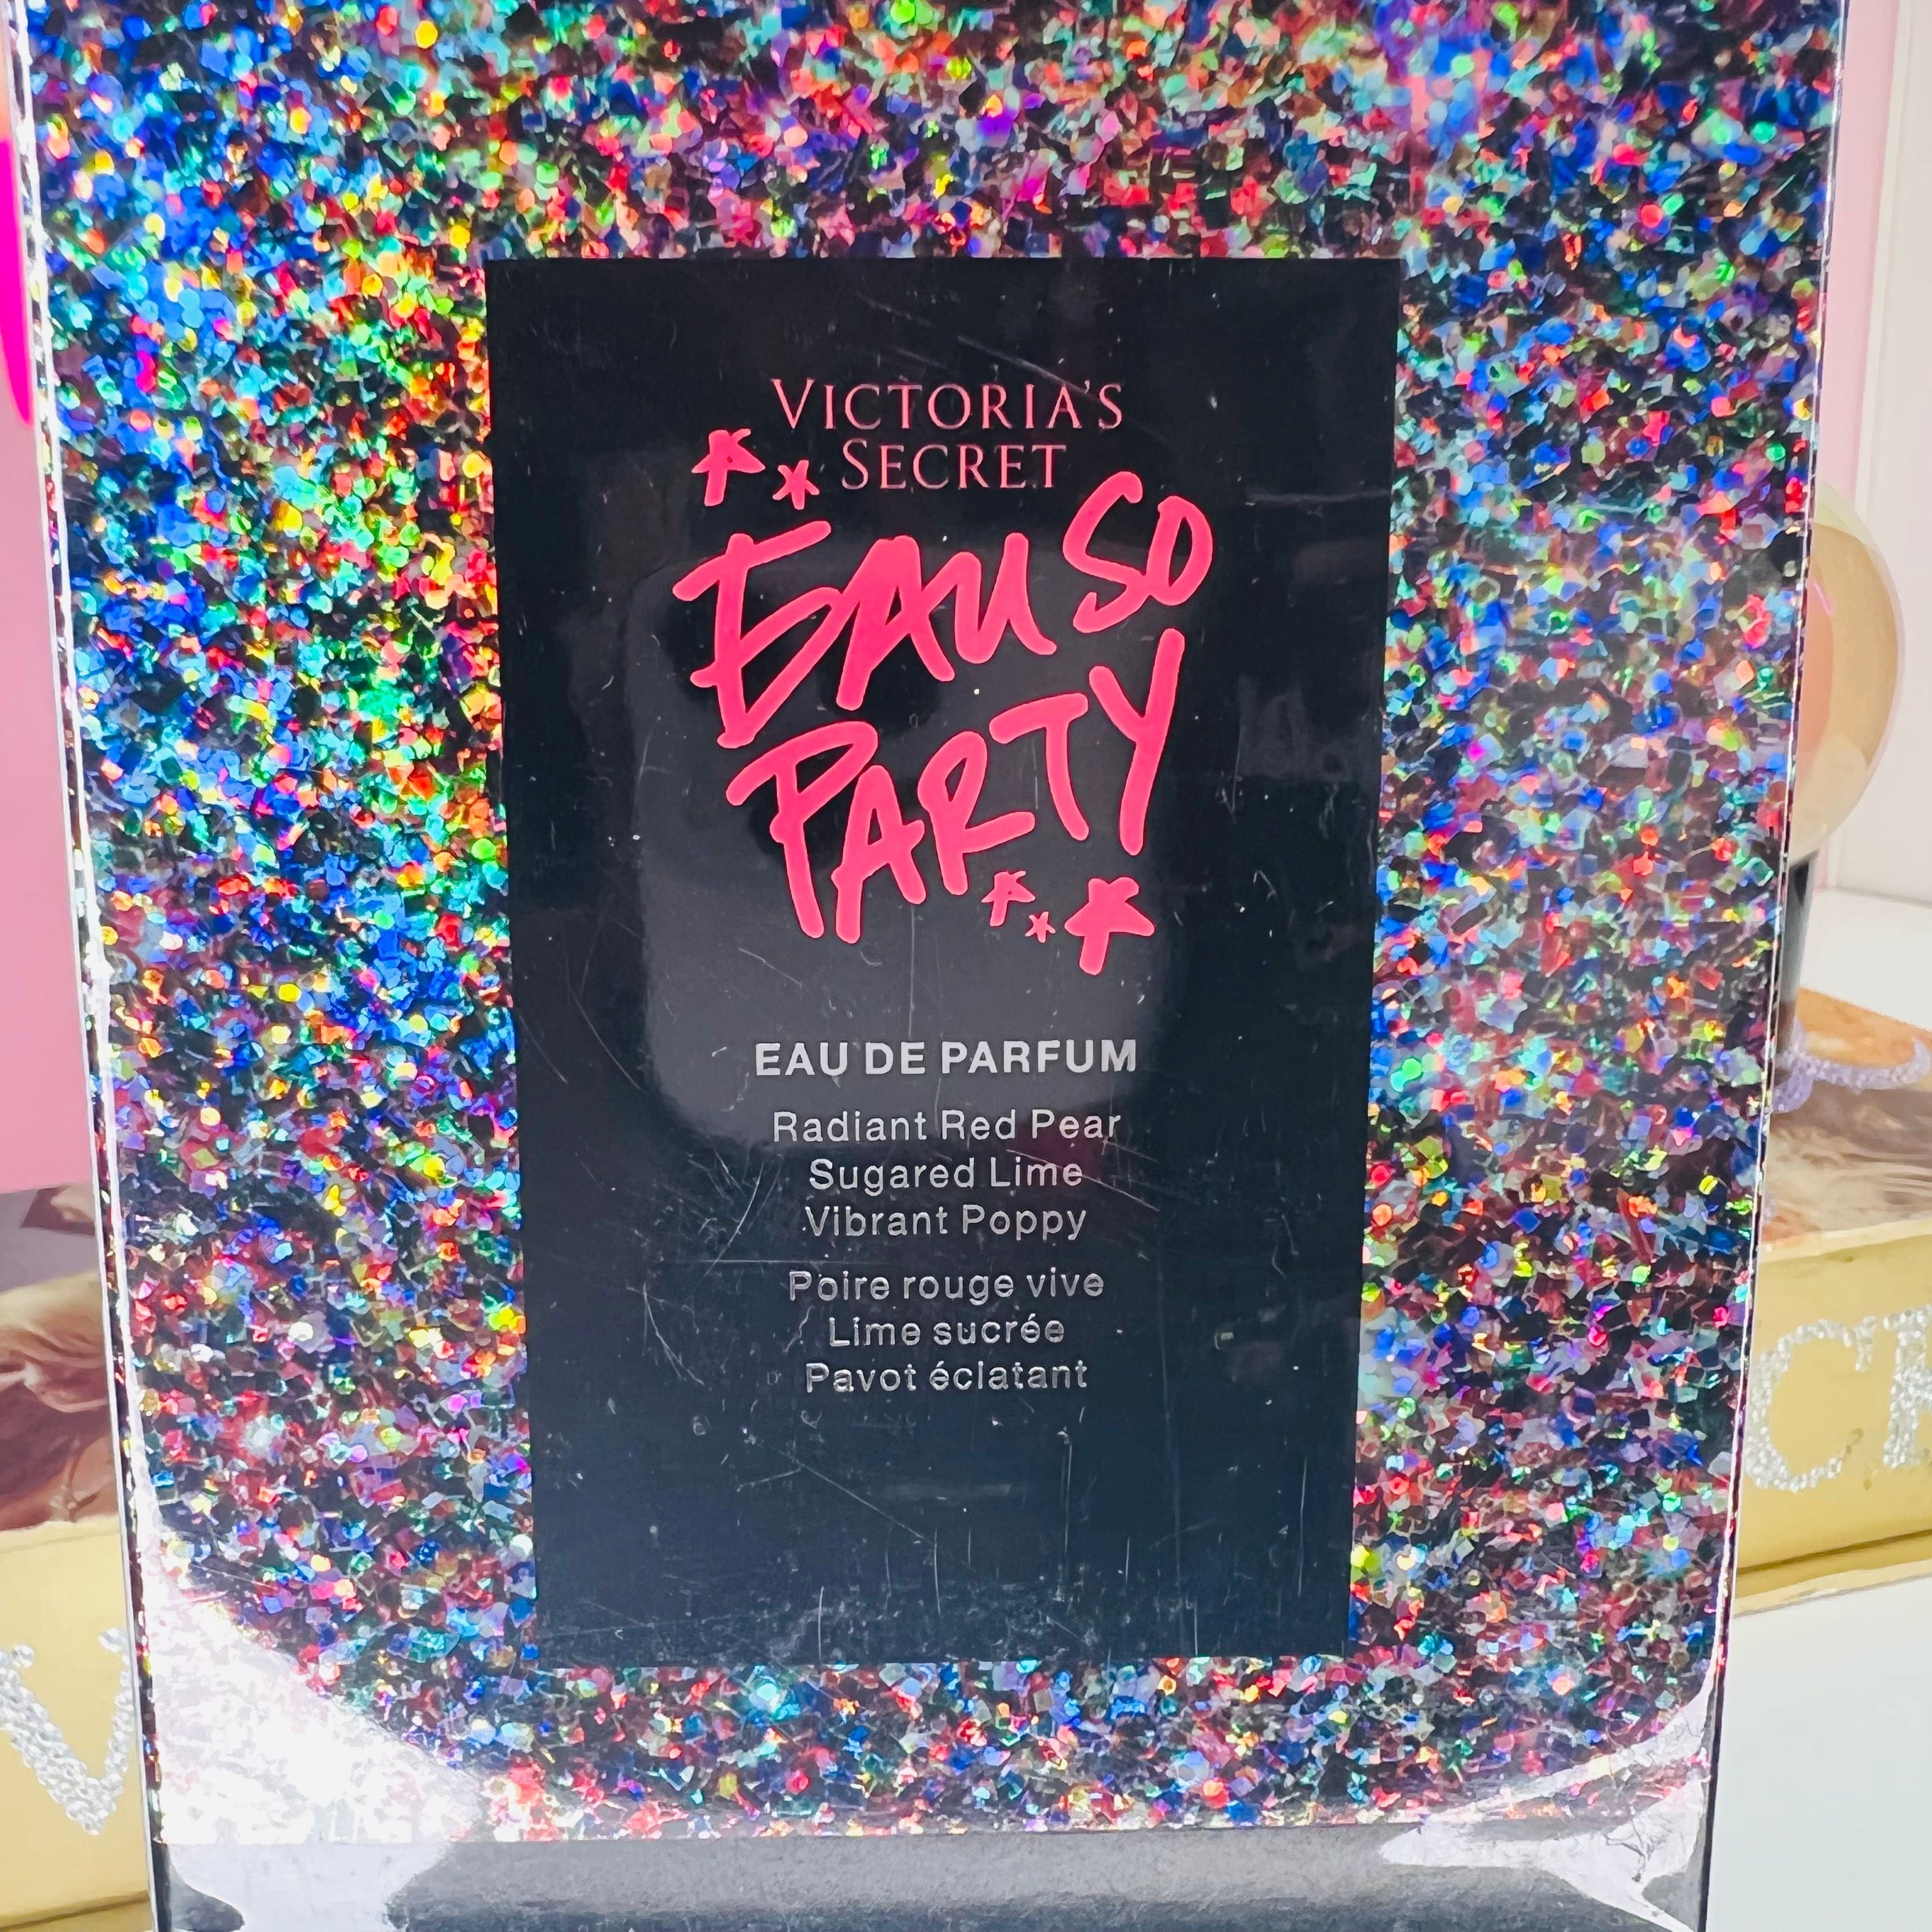 Parfém Eau so Party - 50ml / Nové se štítky - Parfémy Victoria’s Secret